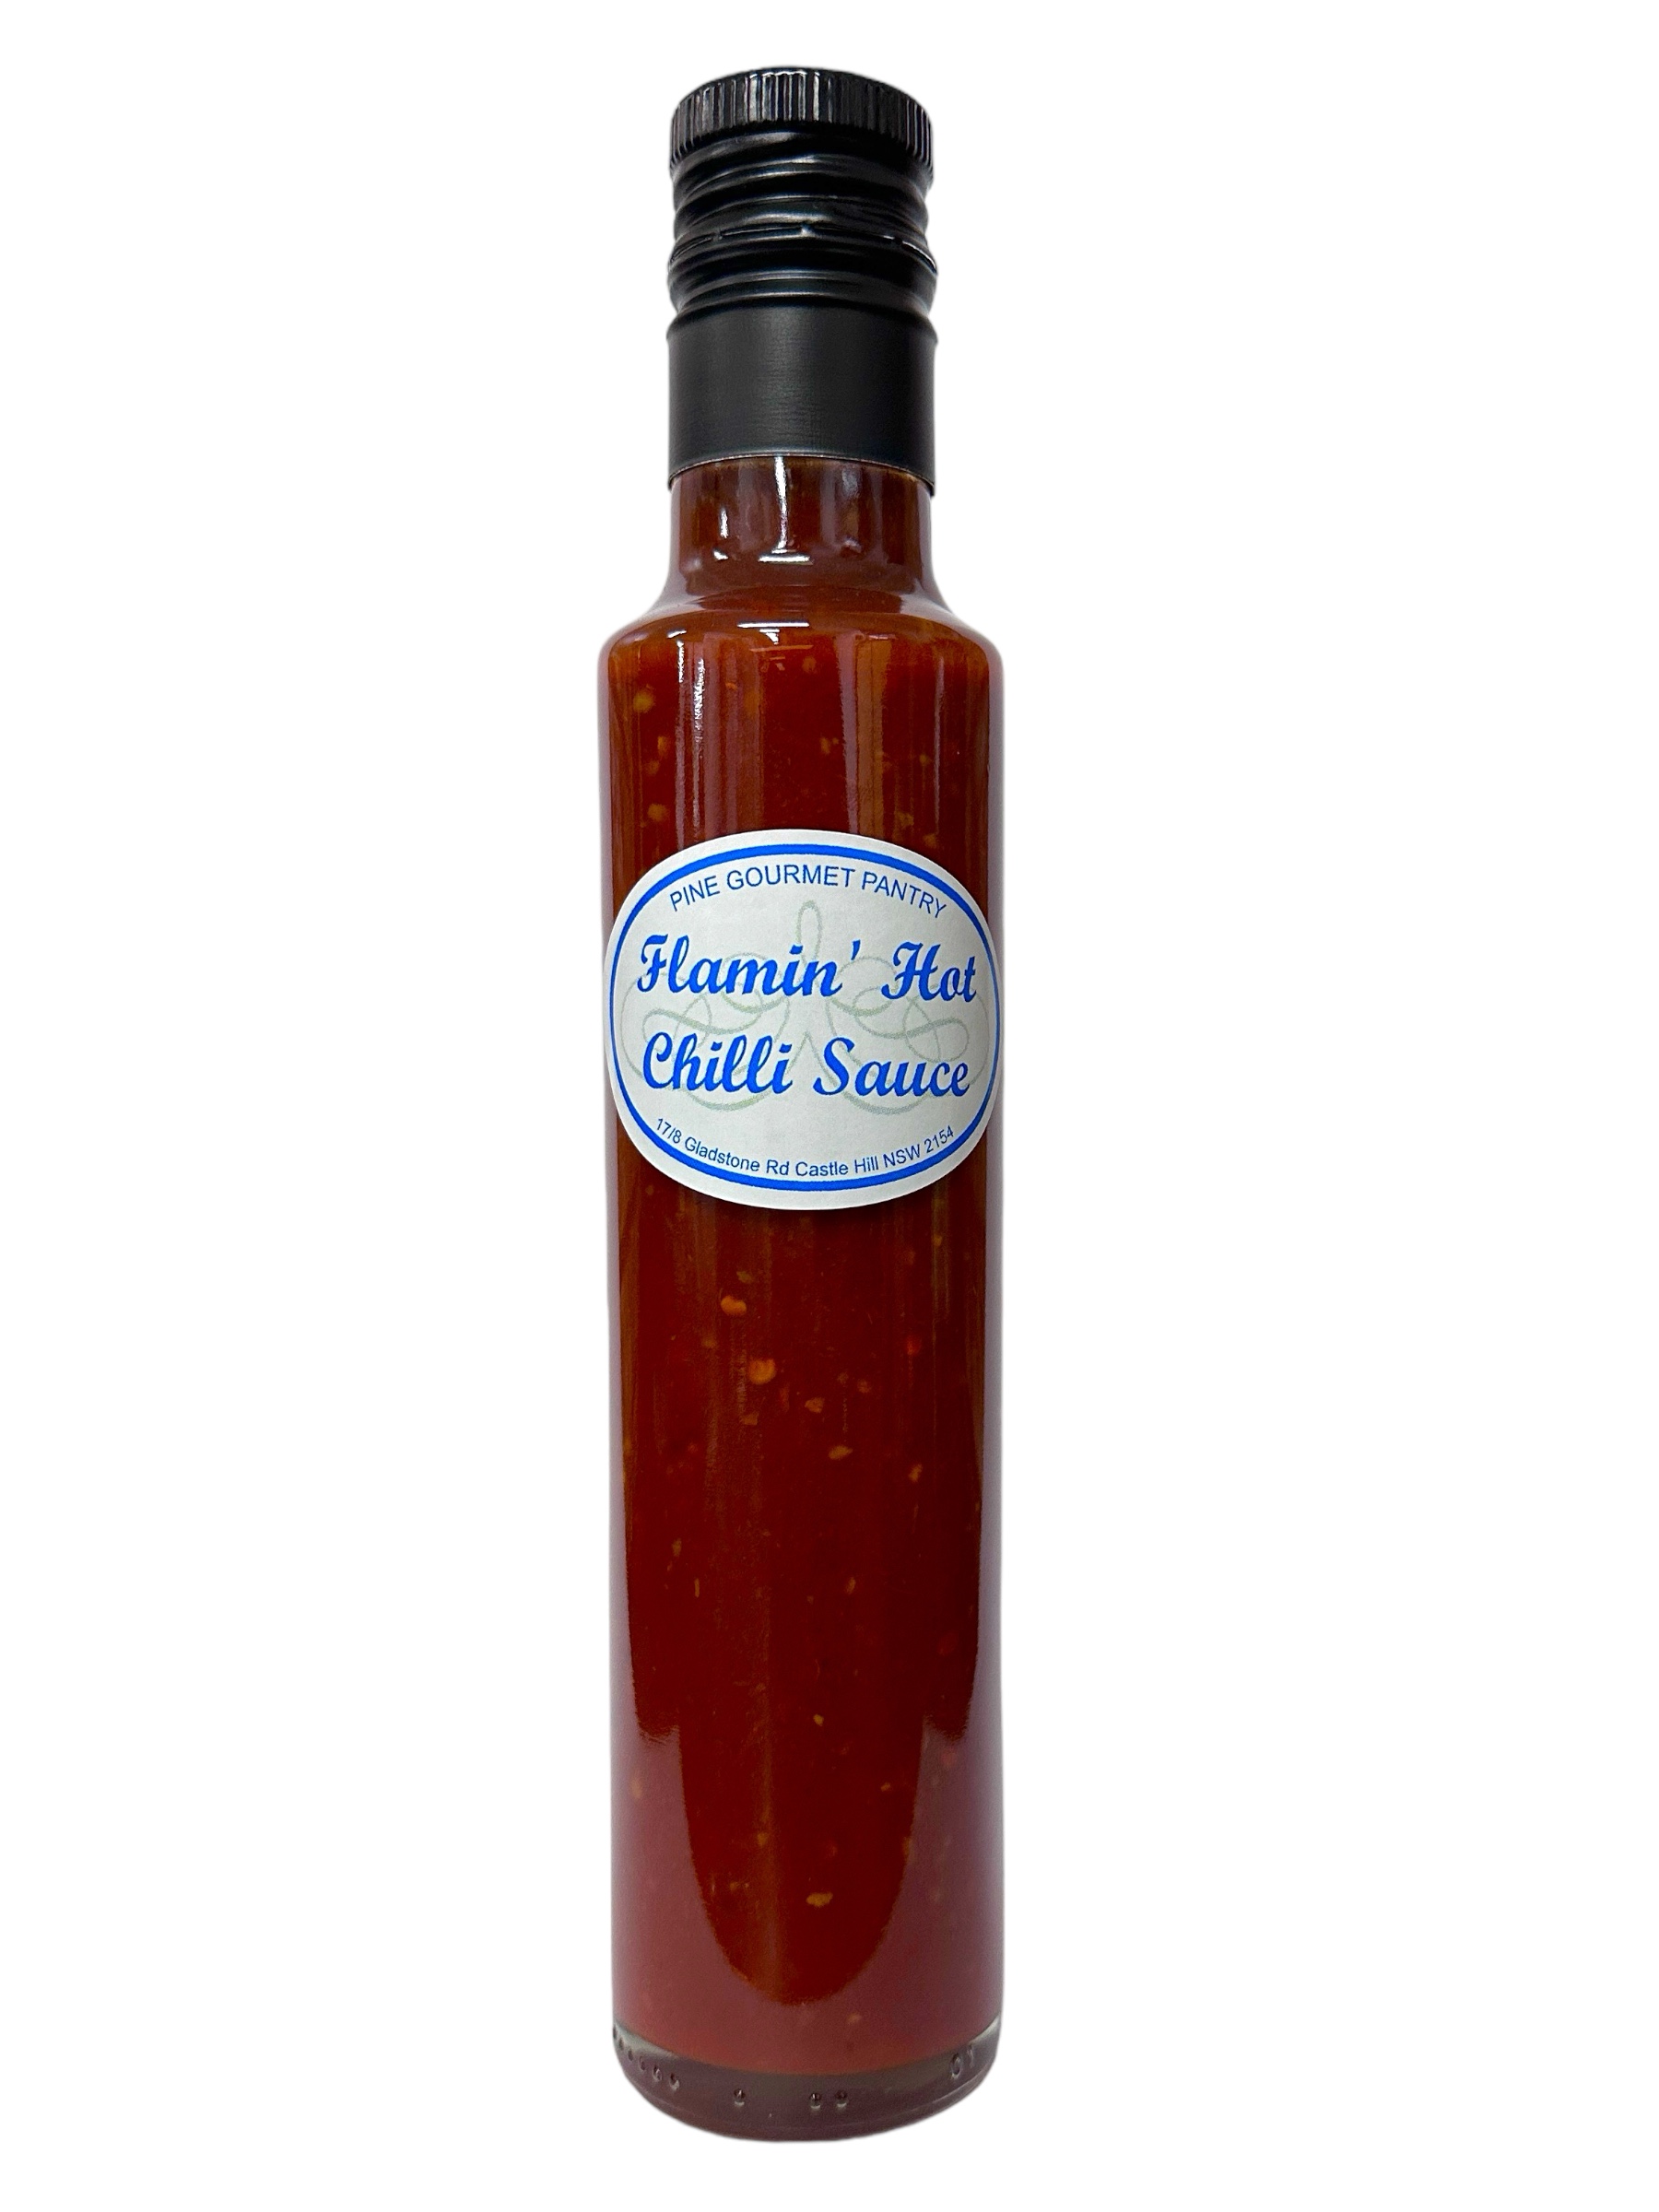 Flamin' Hot Chilli Sauce